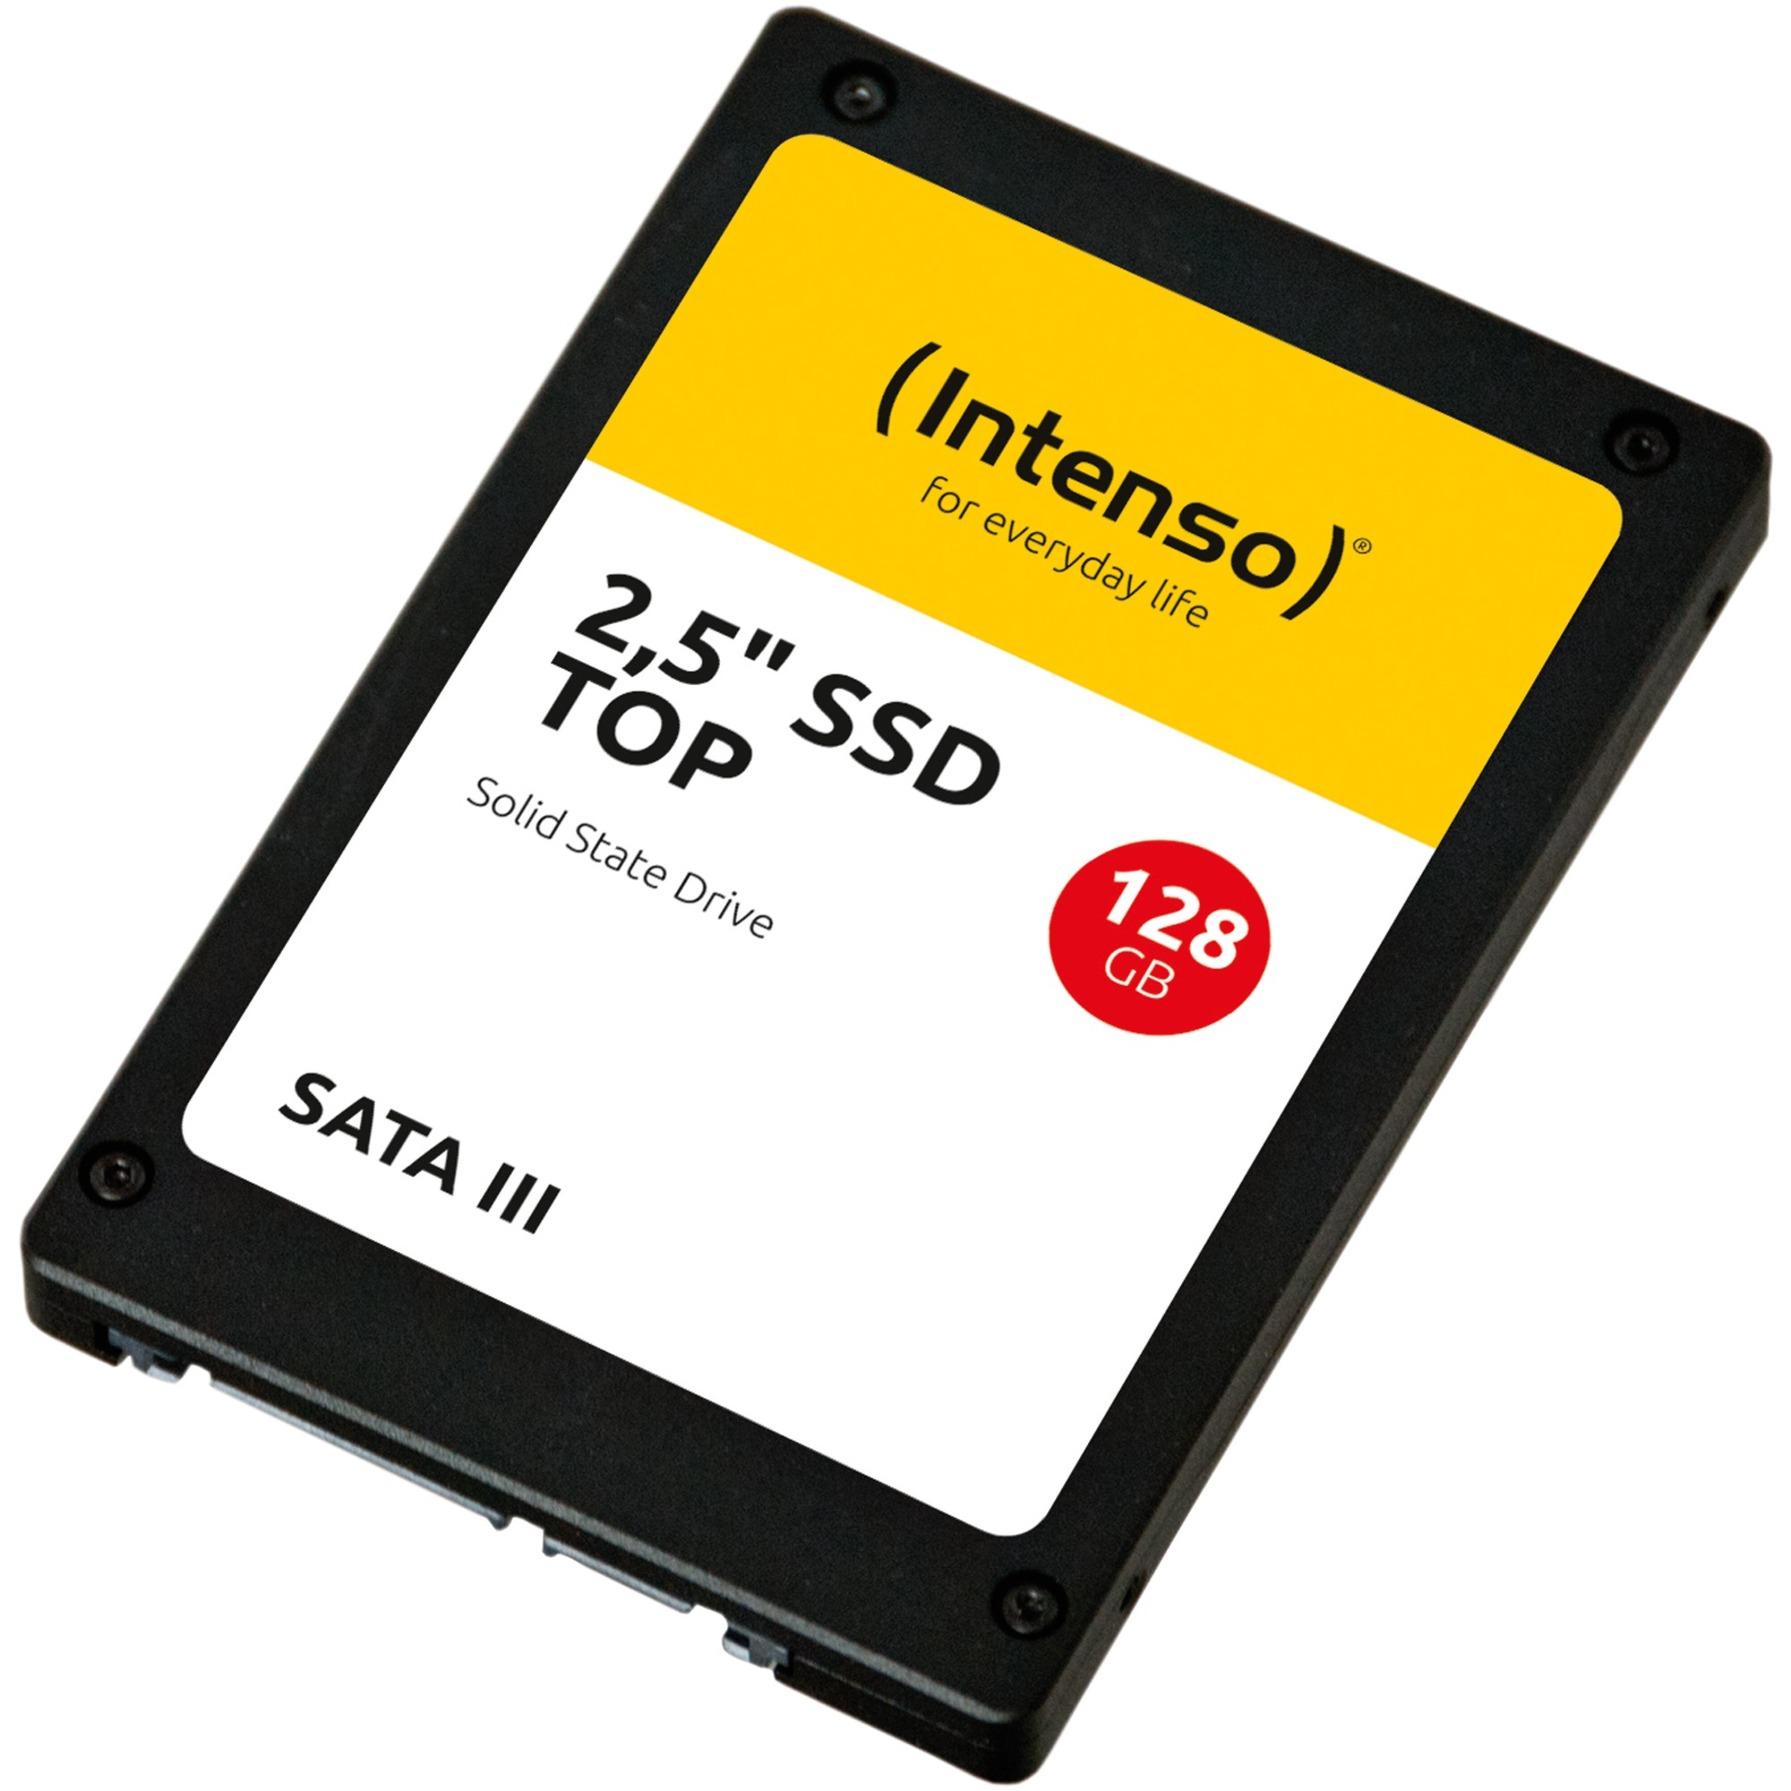 Image of Alternate - TOP SSD 128 GB online einkaufen bei Alternate